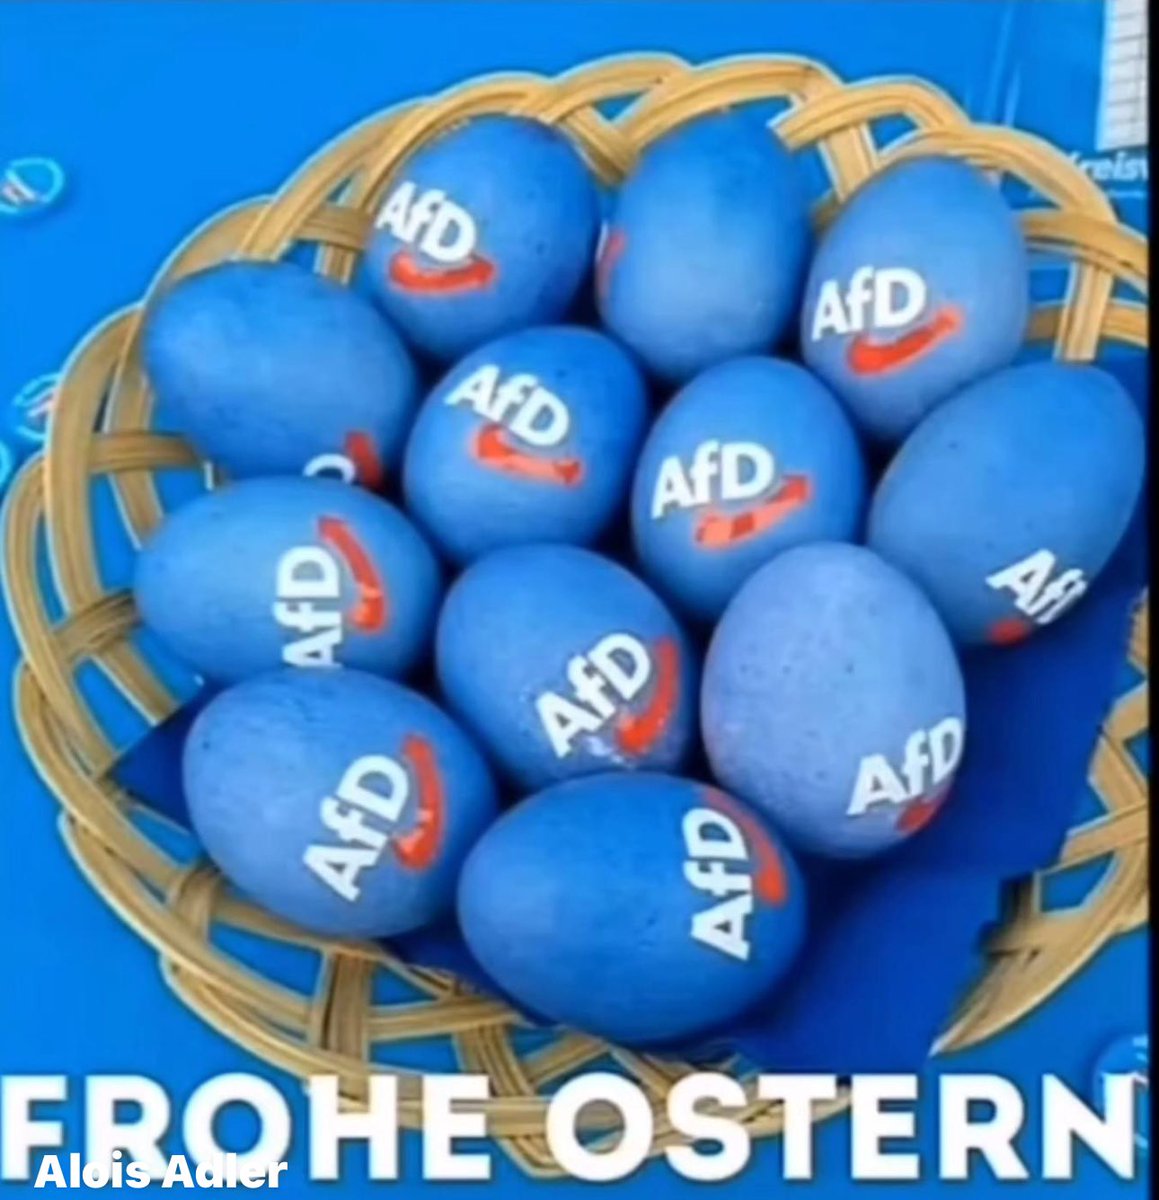 Frohe Ostern euch allen 🪺🐣

#NurDieDummenHassenDieAfd